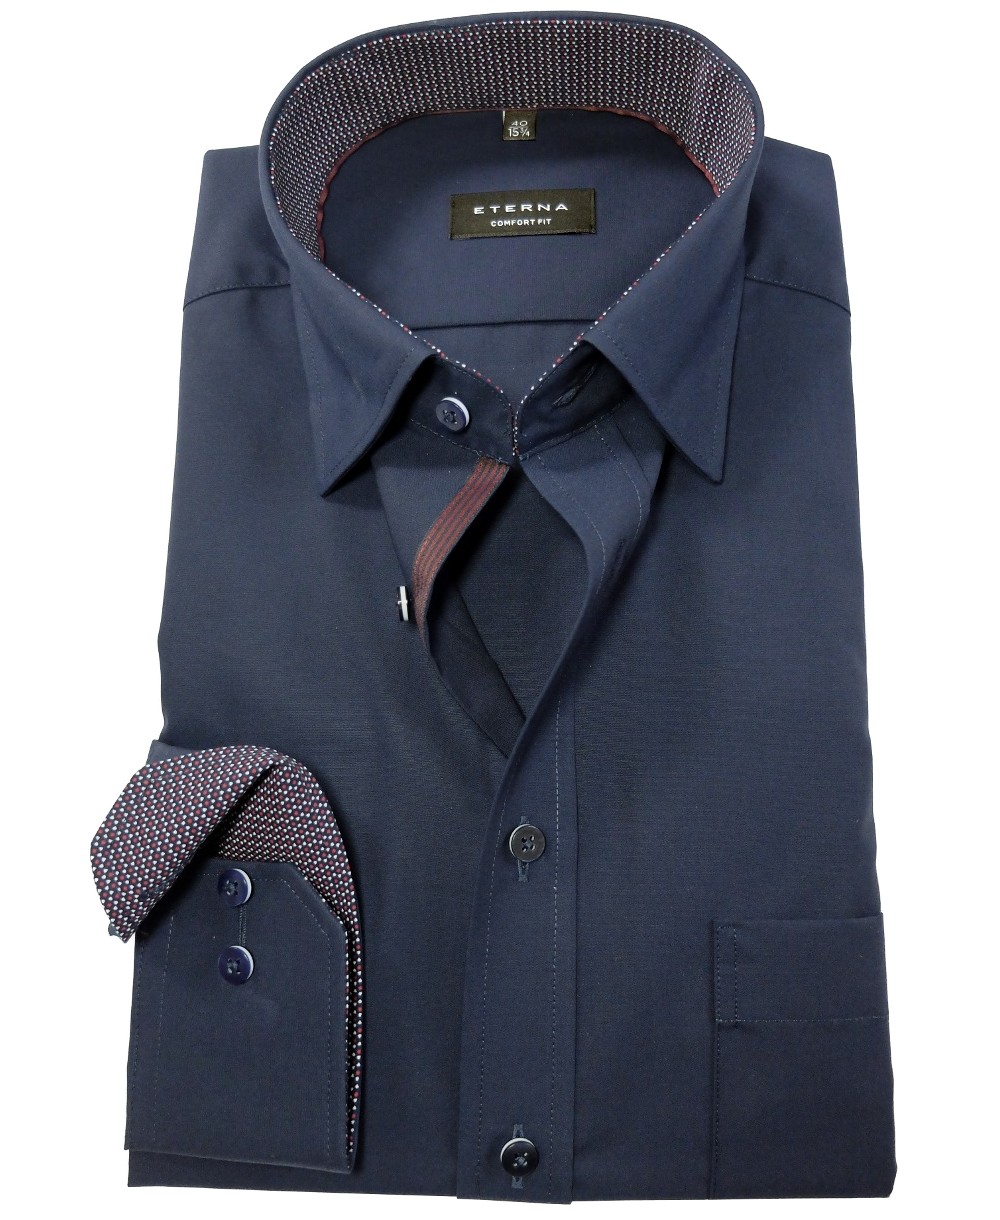 eterna Comfort Fit Langarmhemd dunkelblau mit Brusttasche - Hochwertige  Herrenmode führender Marken zu fairen